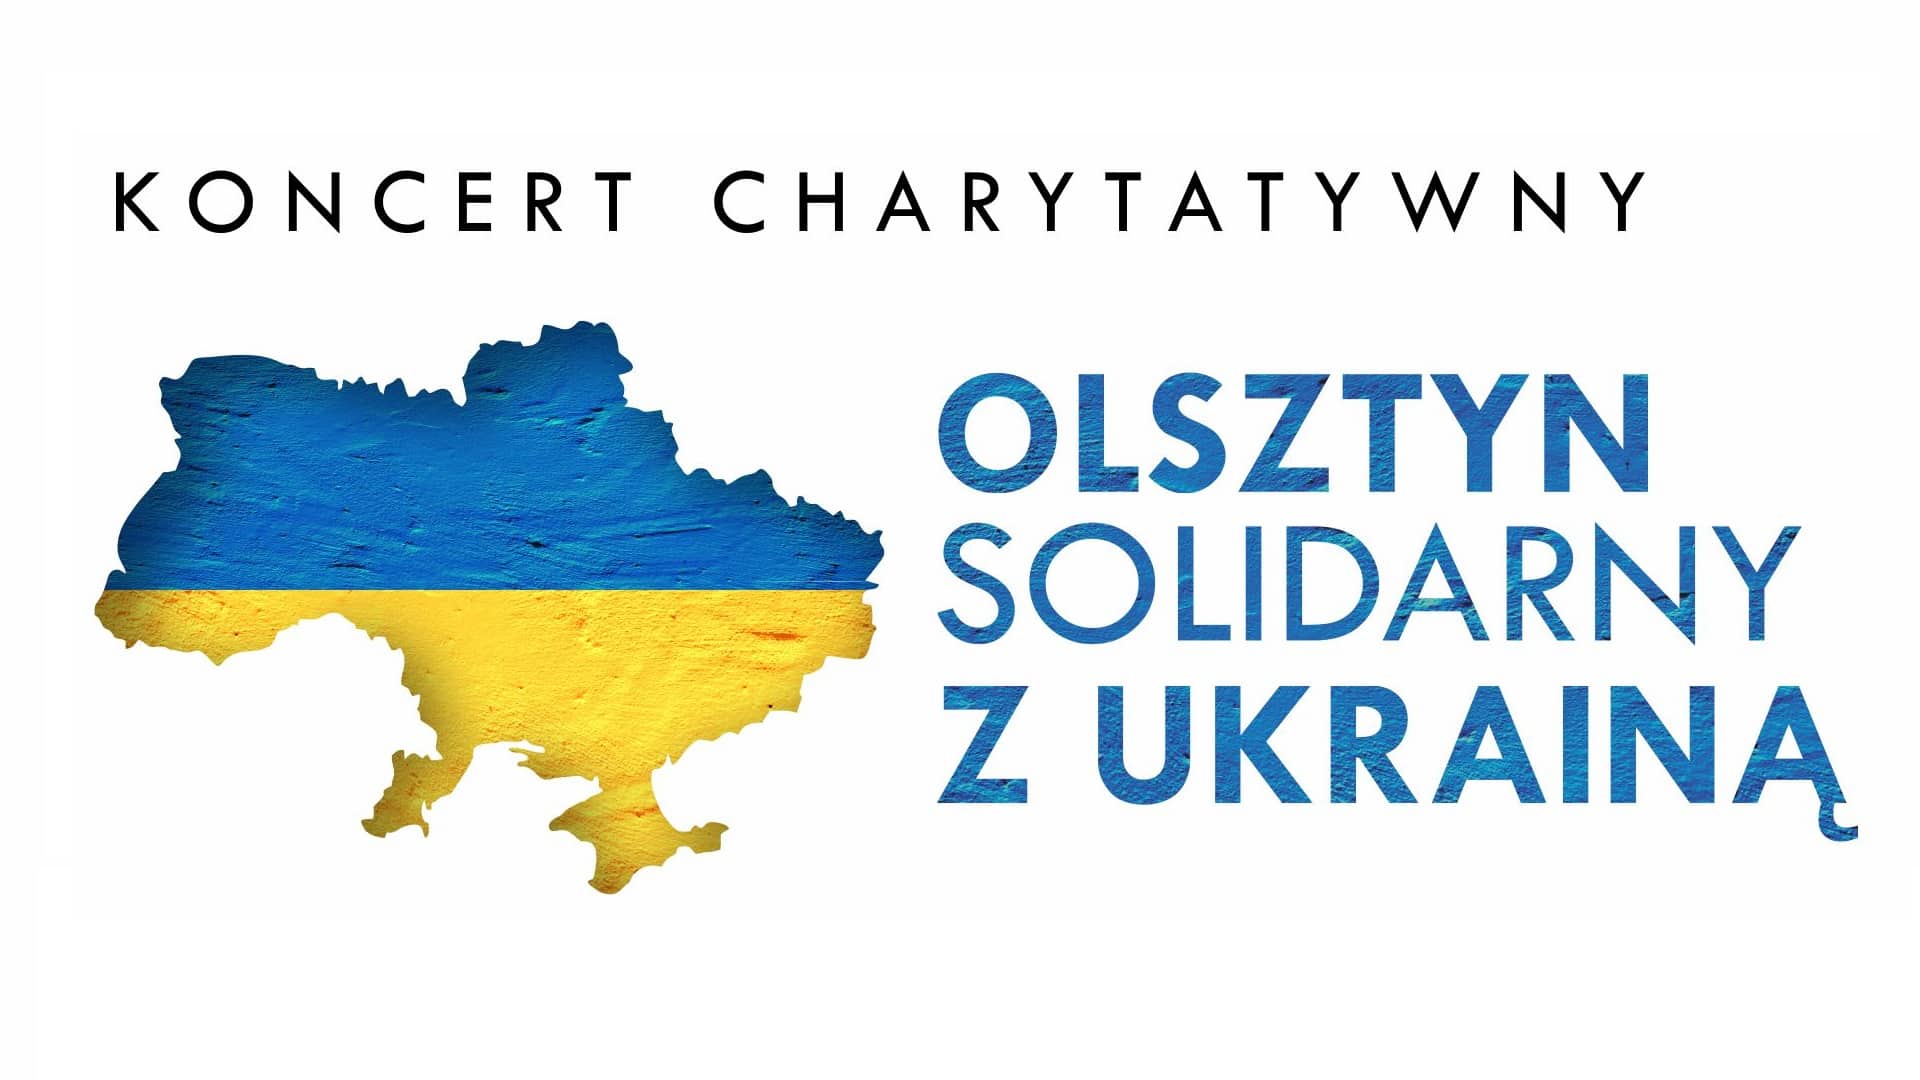 Zapraszamy na koncert charytatywny "Olsztyn solidarny z Ukrainą" ukraina Olsztyn, Wiadomości, zPAP